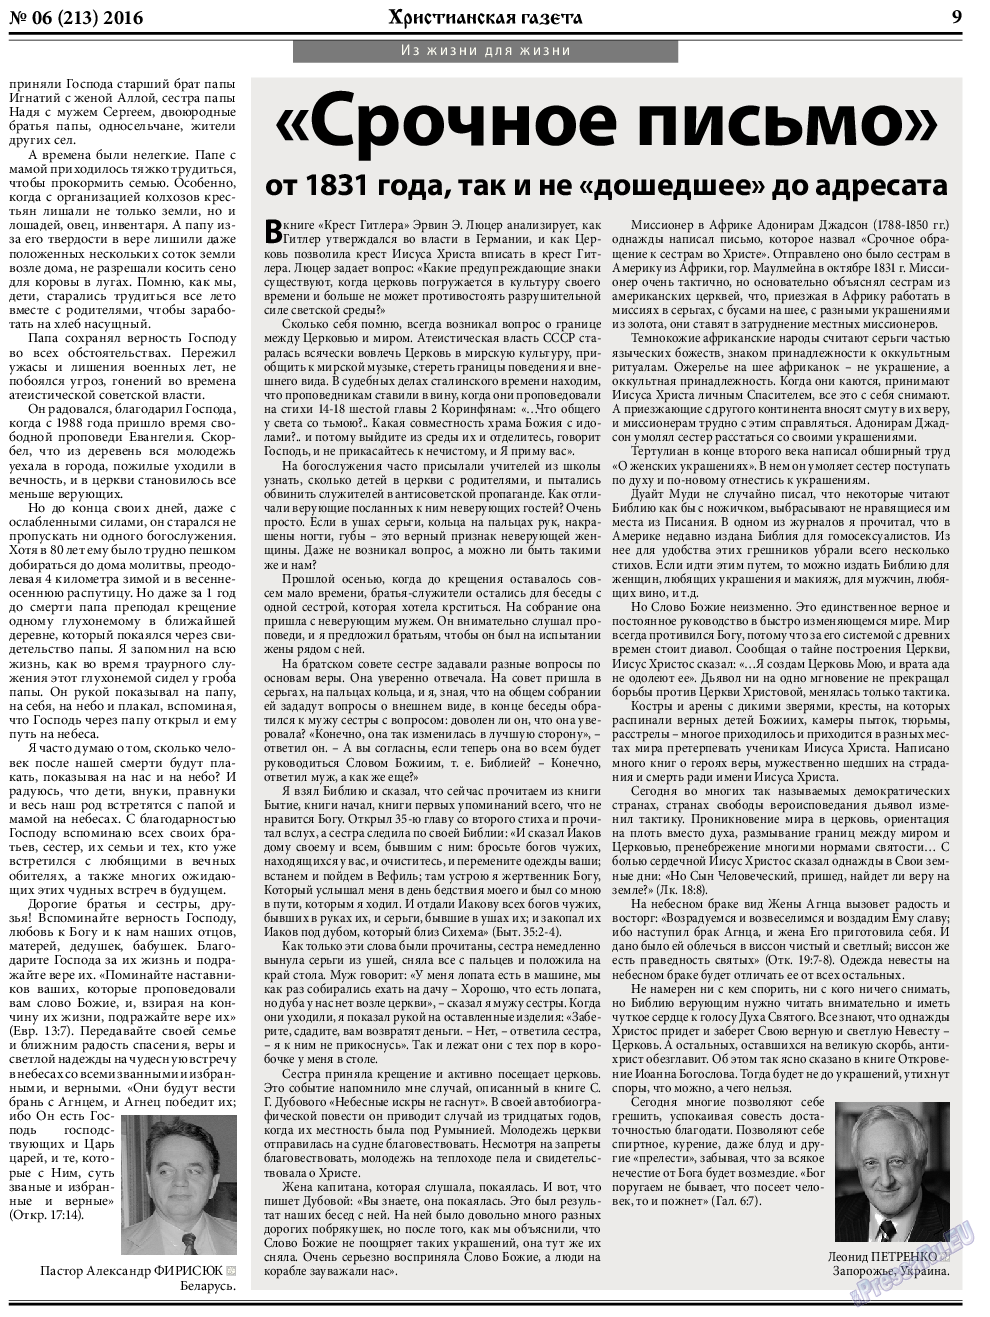 Христианская газета, газета. 2016 №6 стр.9